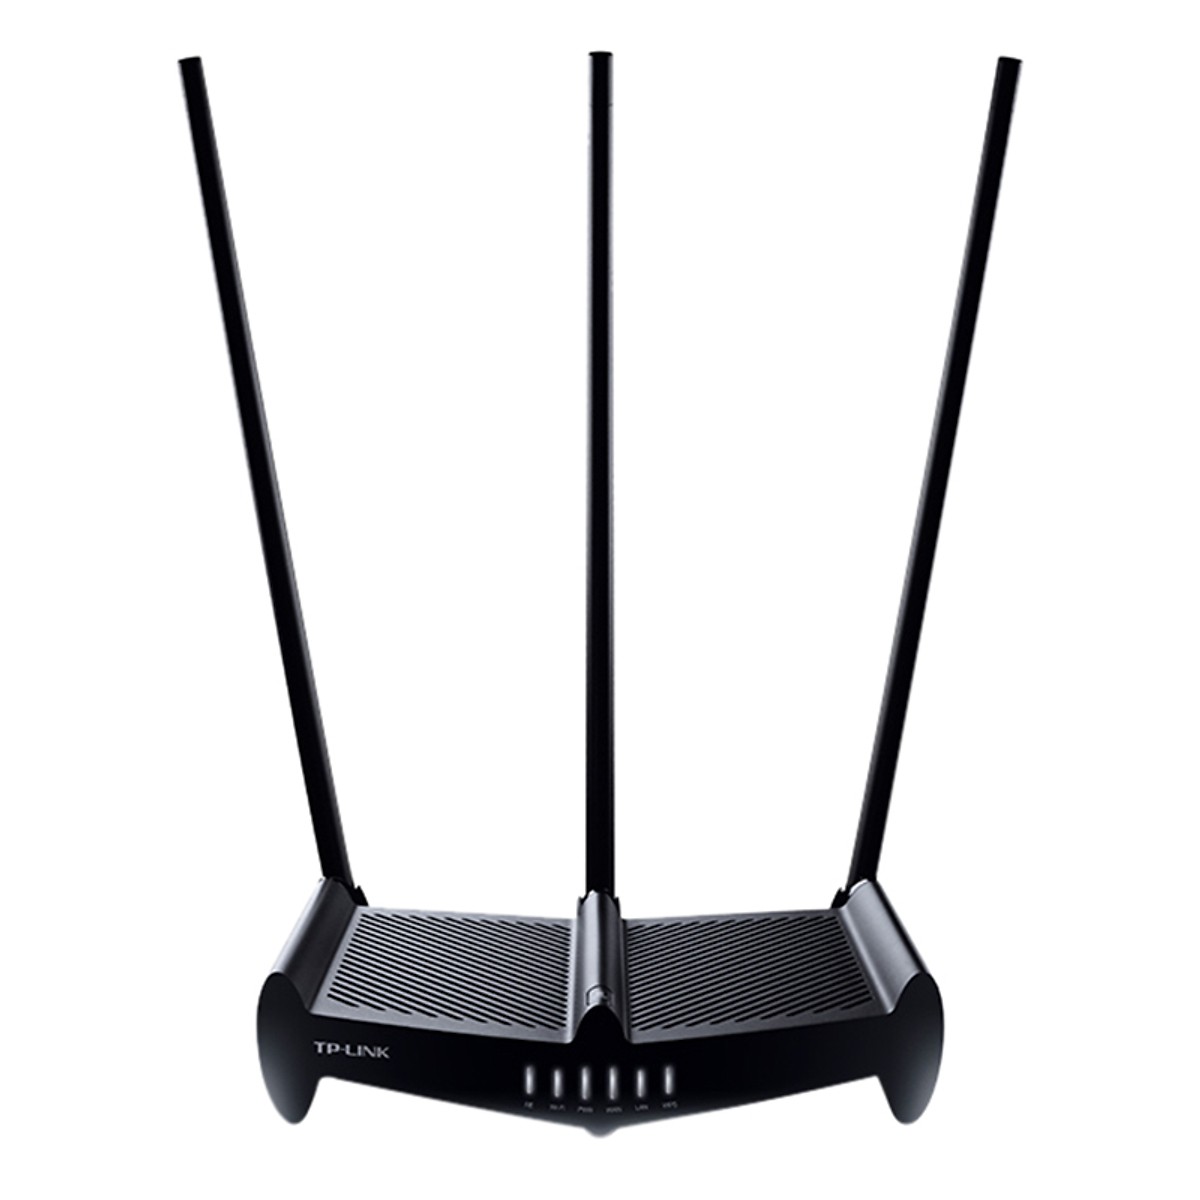  Bộ phát wifi công suất cao TP-Link TL-WR941HP Wireless N450Mbps Xuyên tường